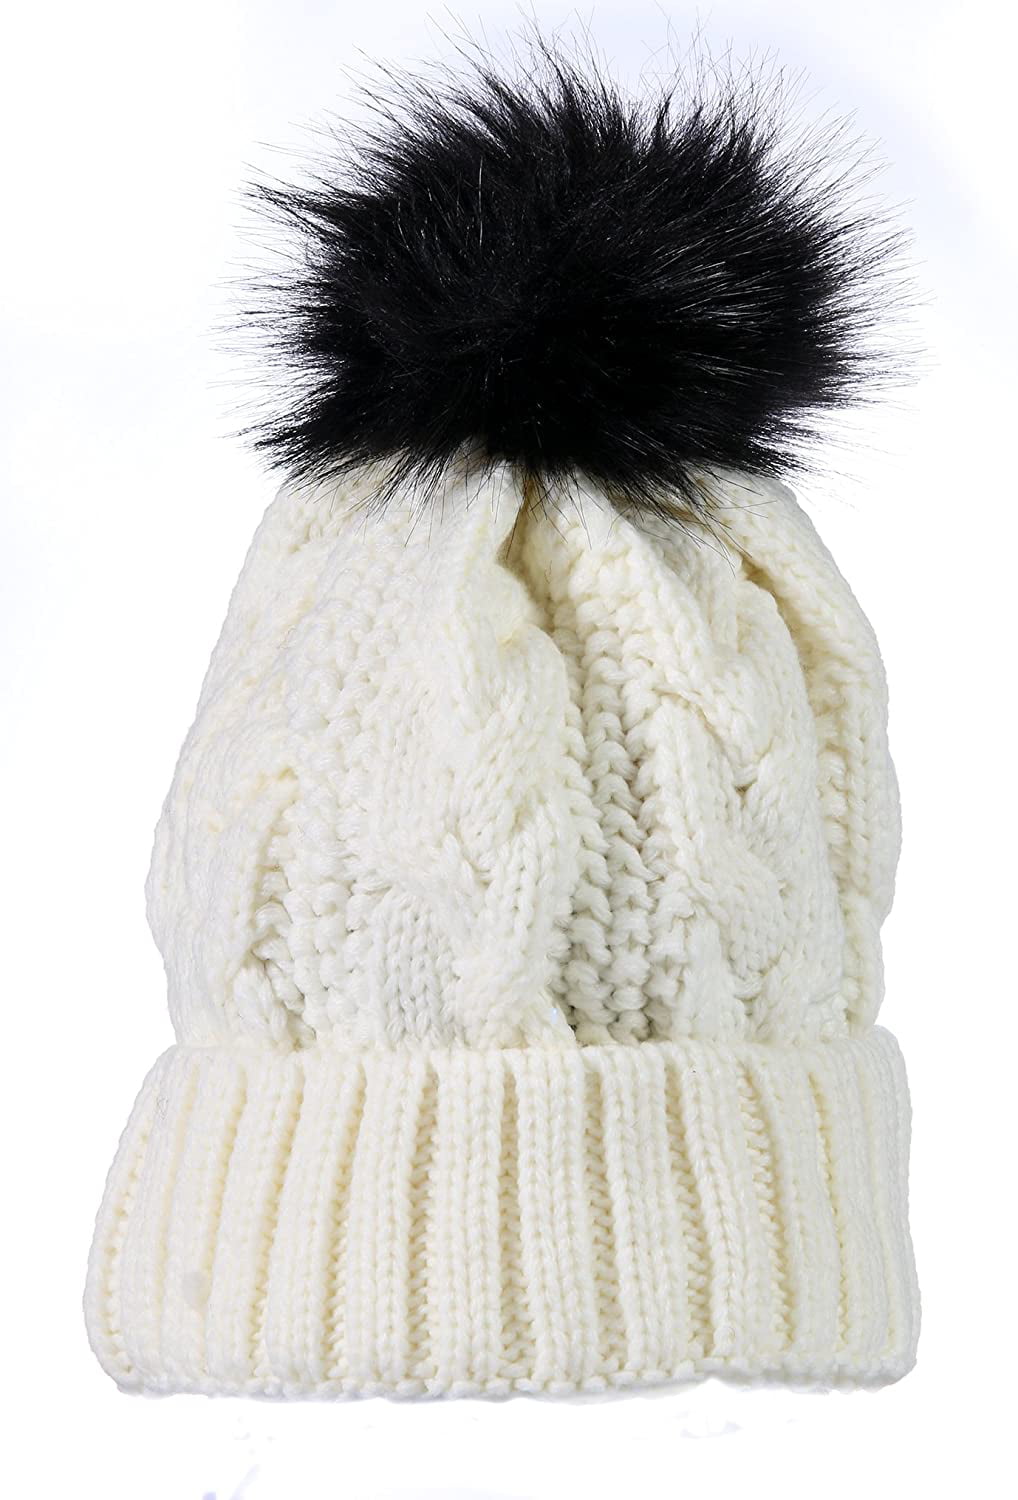 Yacht & Smith Womens Pom Pom Beanie Hat, Winter Cable Knit Hat, Warm Cap,  3 Poms (Double Pom Pom Charcoal) 